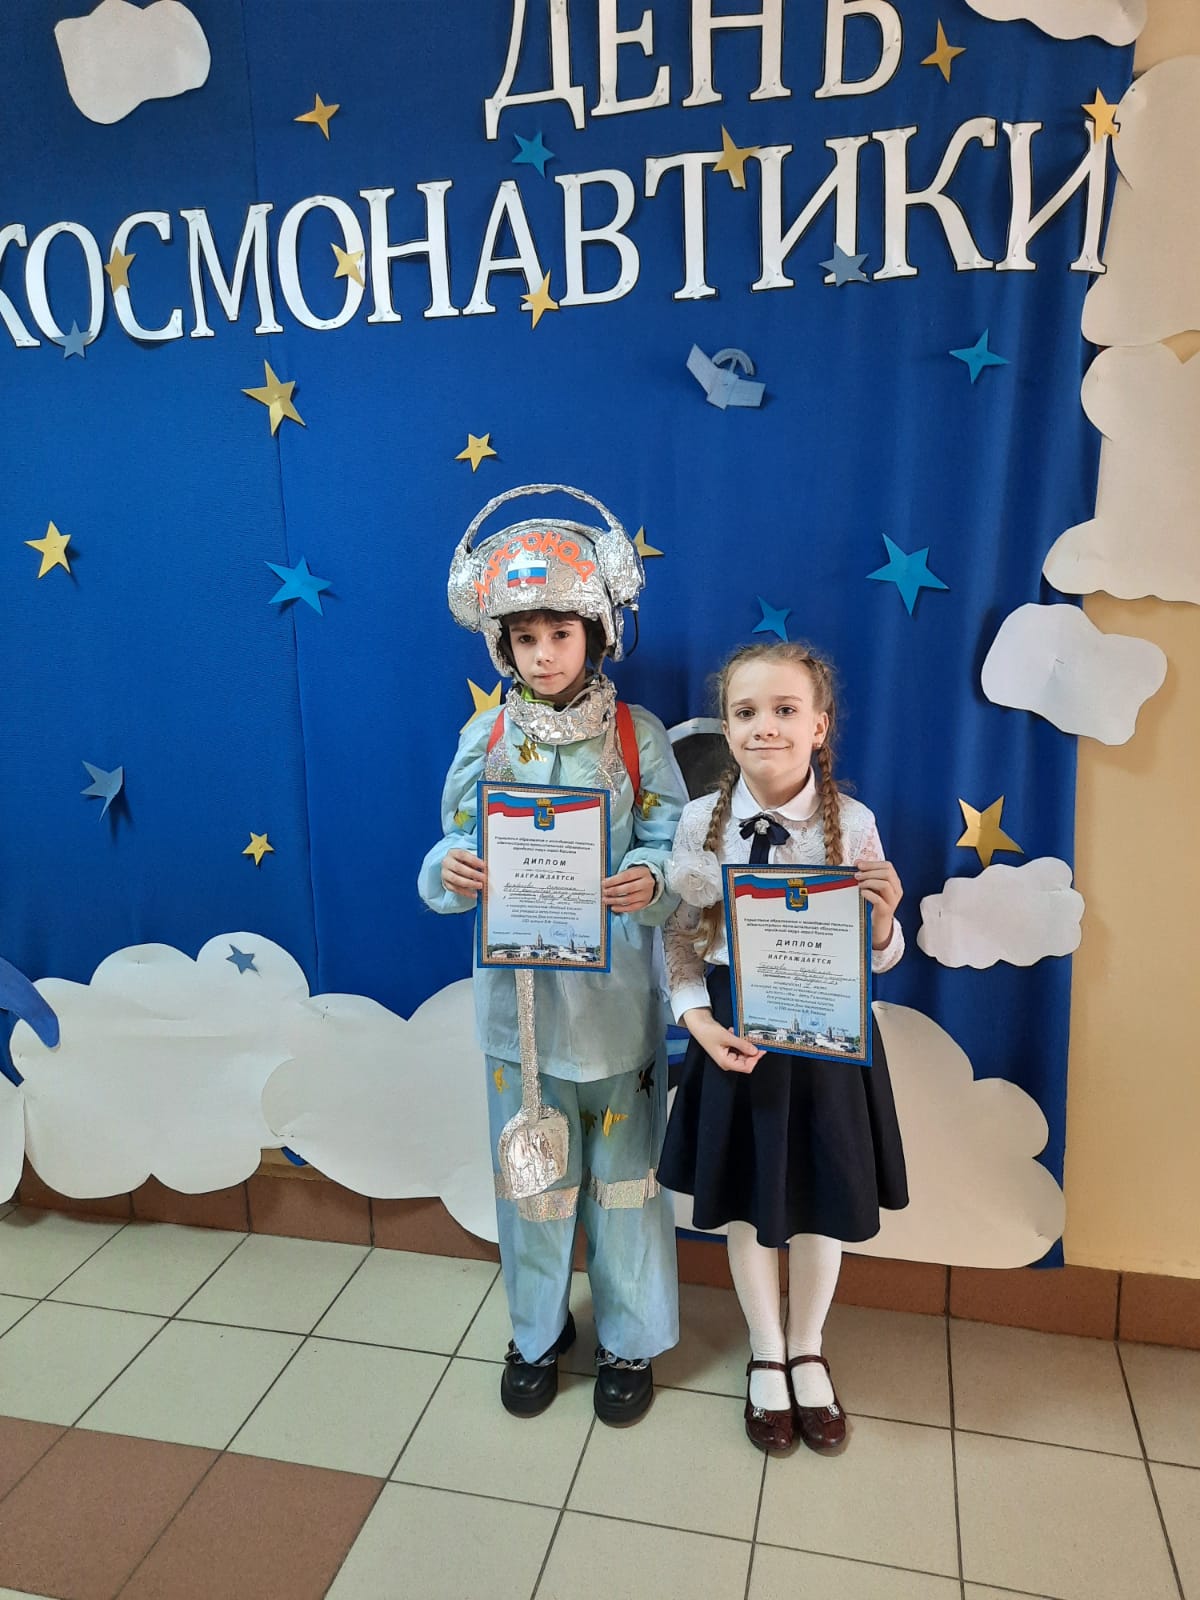 День космонавтики мероприятие для школьников. Мероприятия ко Дню космонавтики. День космонавтики мероприятия в школе.